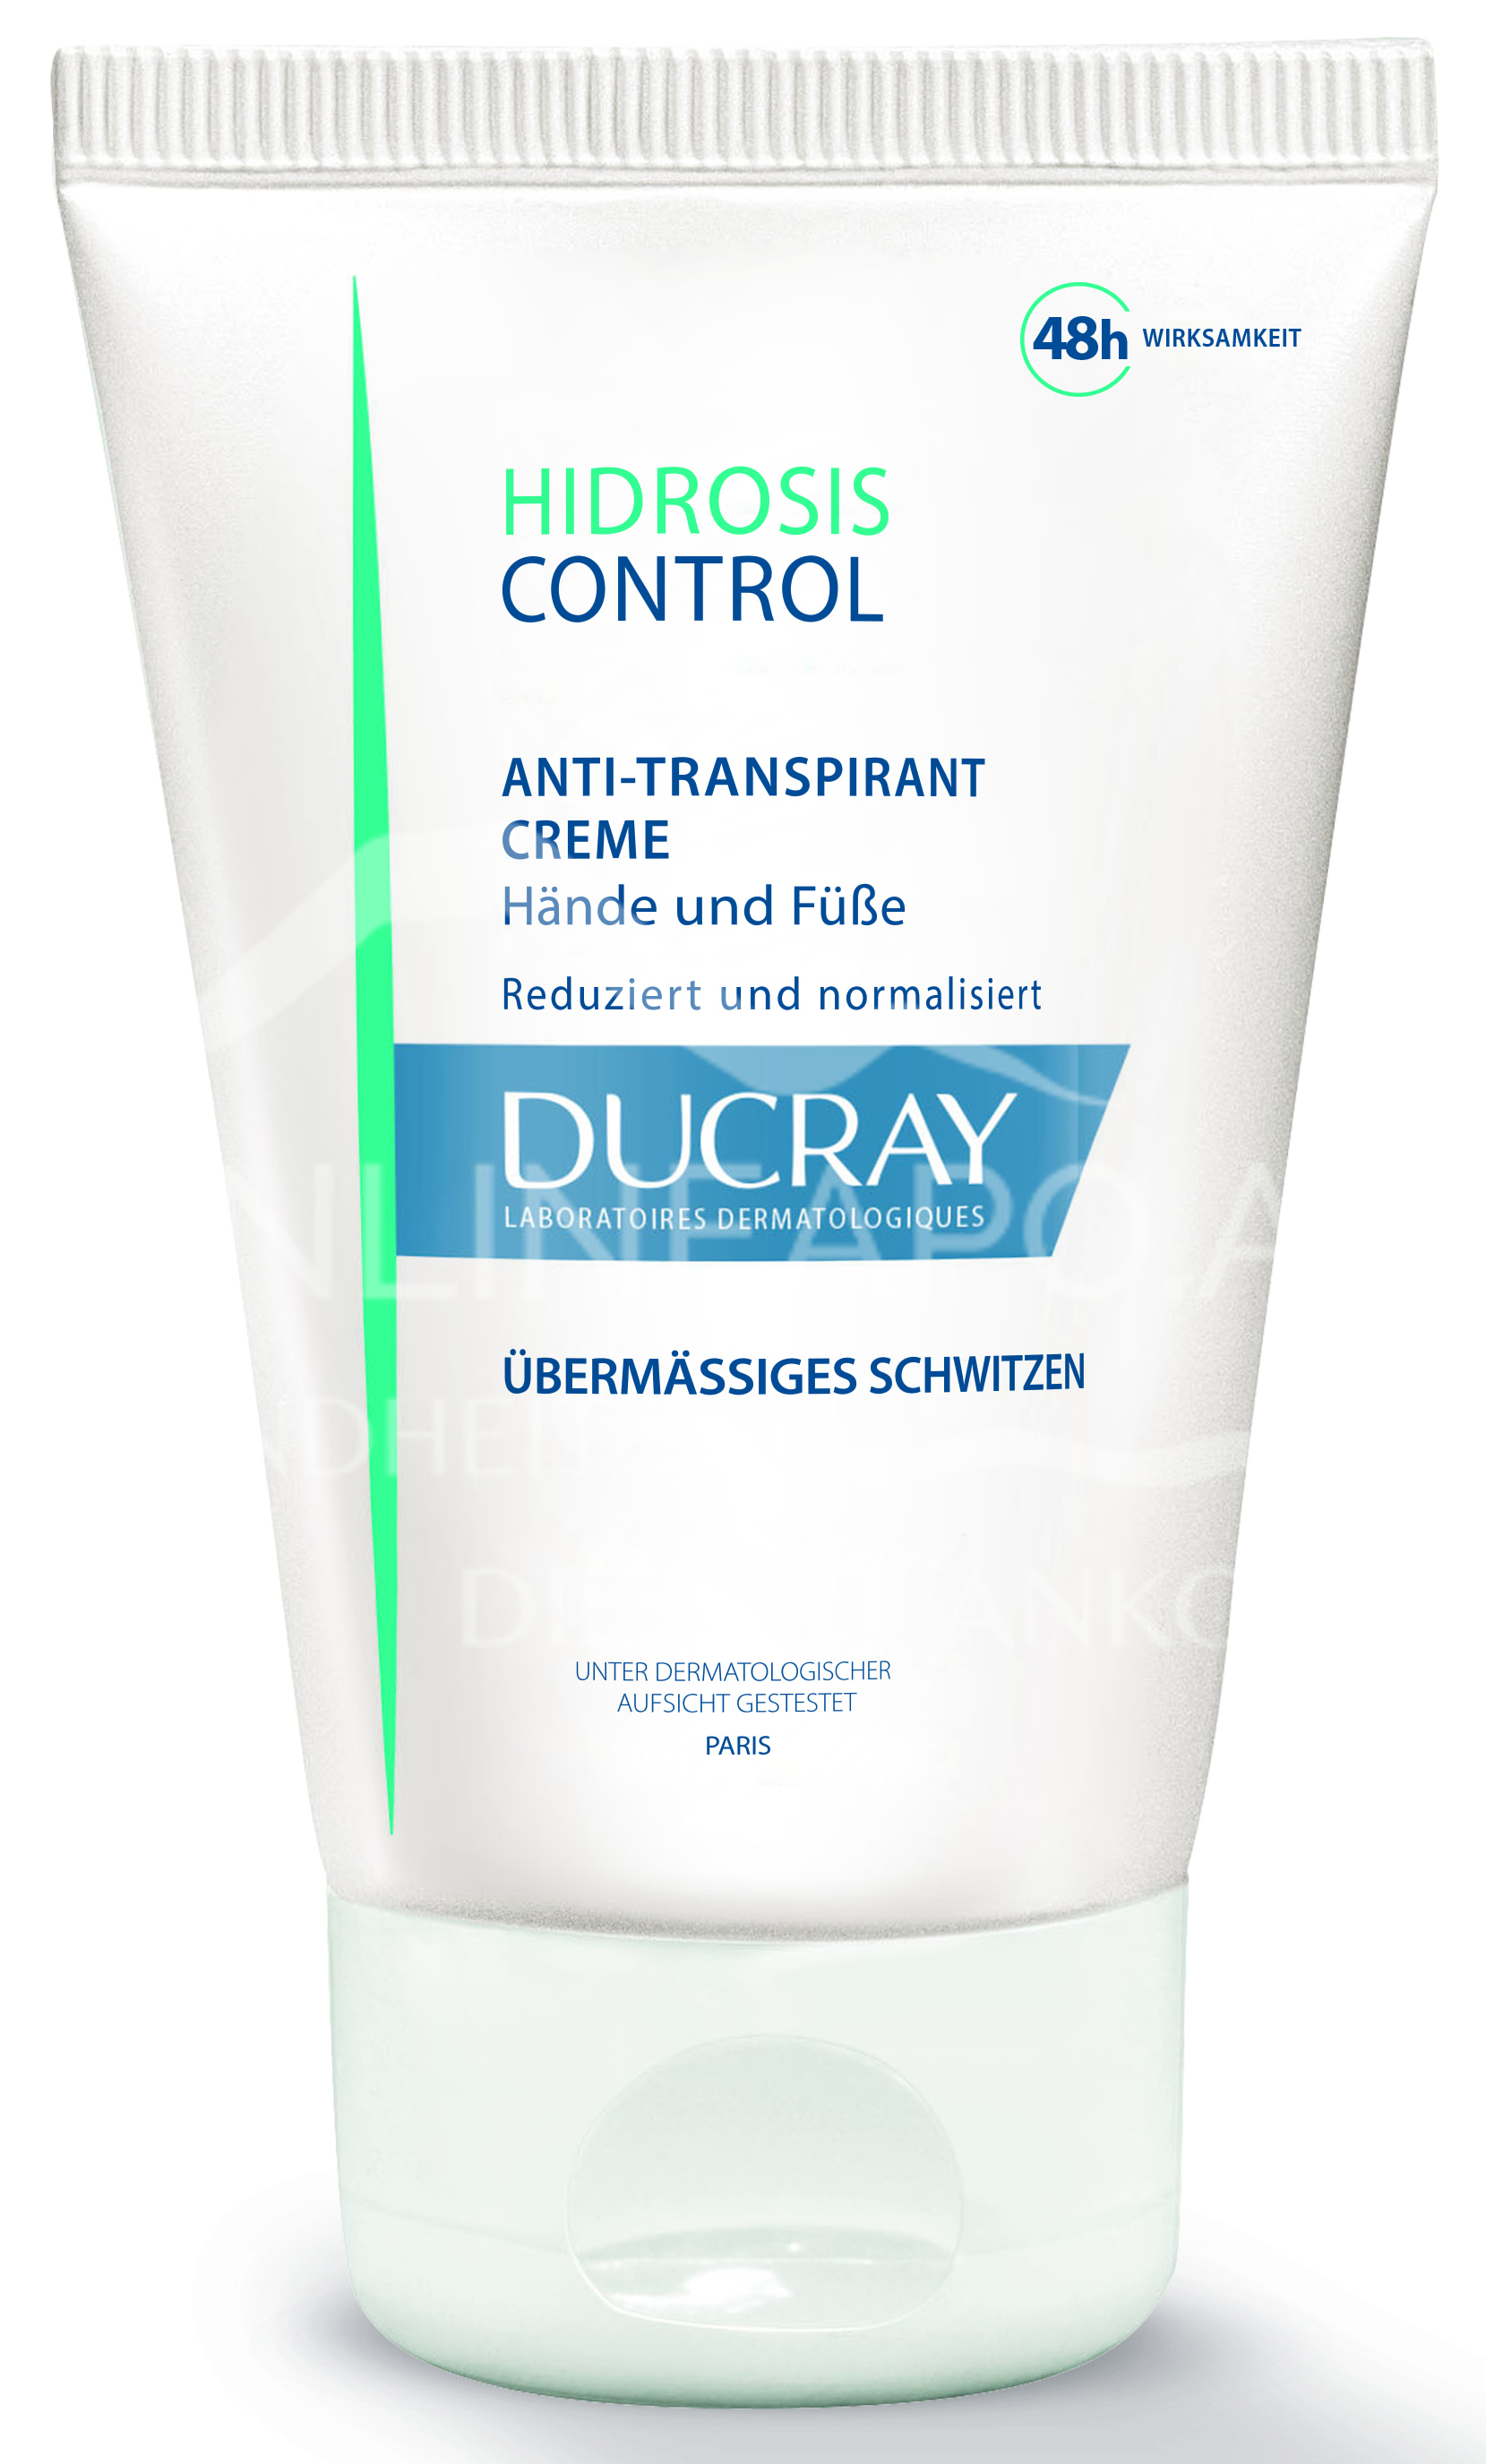 Ducray Hidrosis Control Creme Anti-Transpirant für Hände und Füße